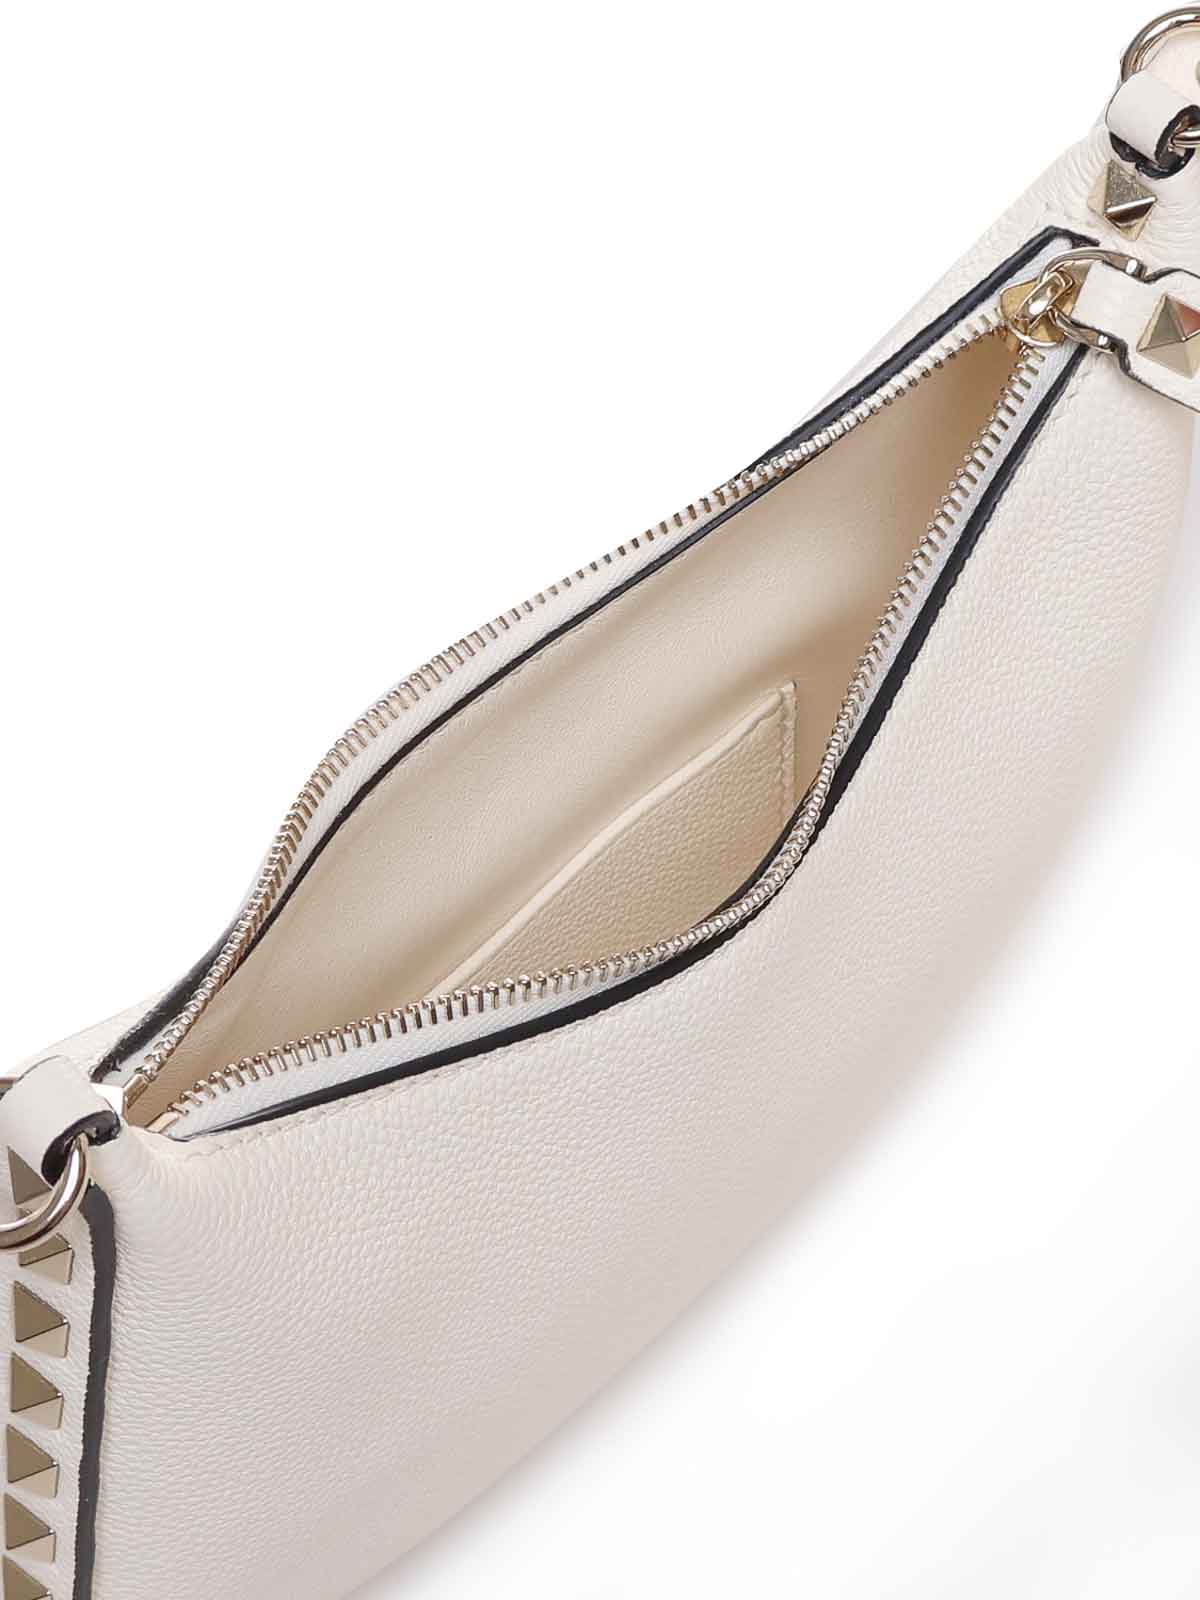 Shop Valentino Rockstud Mini Hobo Bag In Calfskin In Blanco